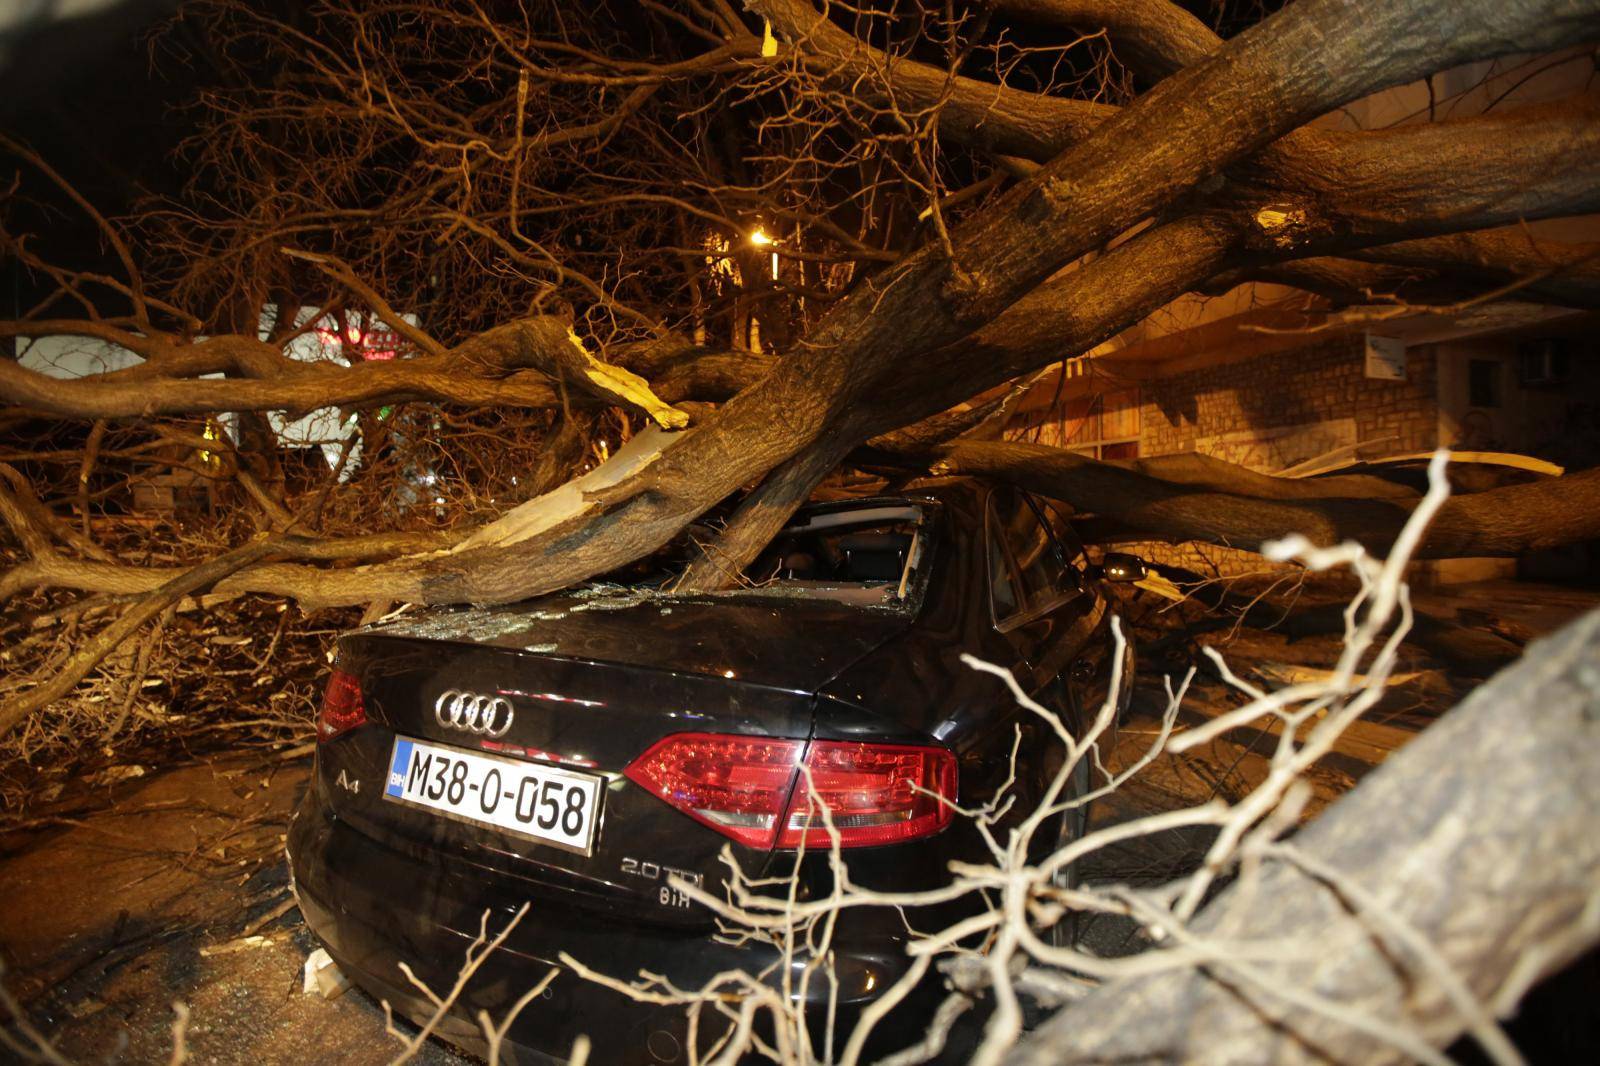 Olujni vjetar u Mostaru rušio sve pred sobom